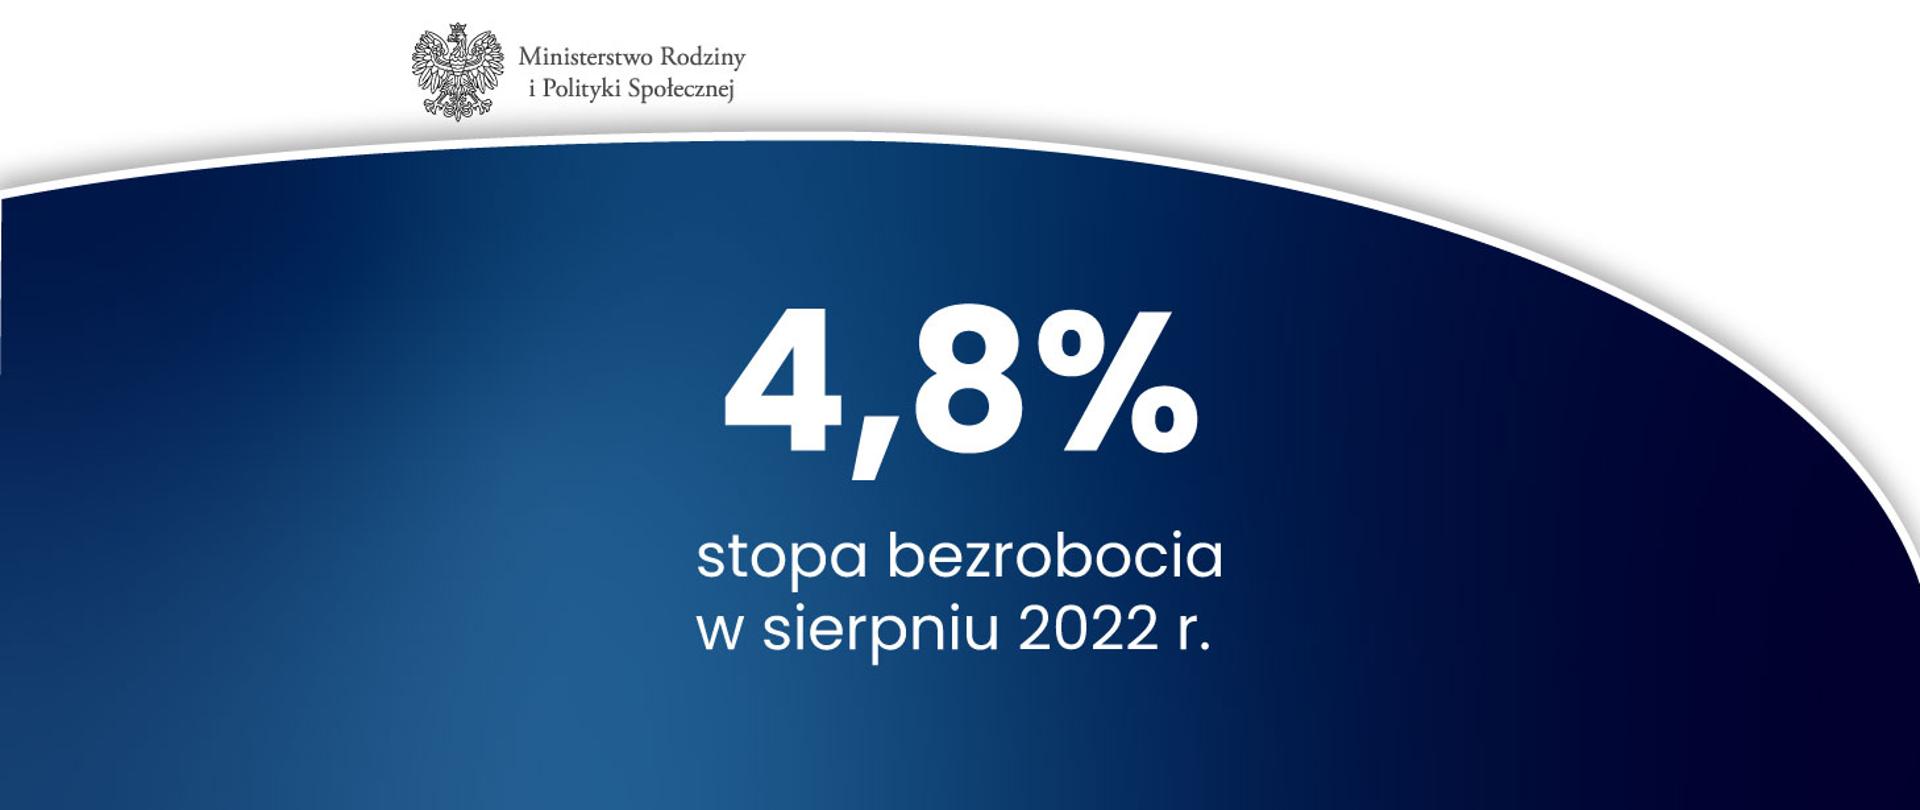 Grafika z logo ministerstwa oraz tekstem: 4,8% stopa bezrobocia w sierpniu 2022 r.